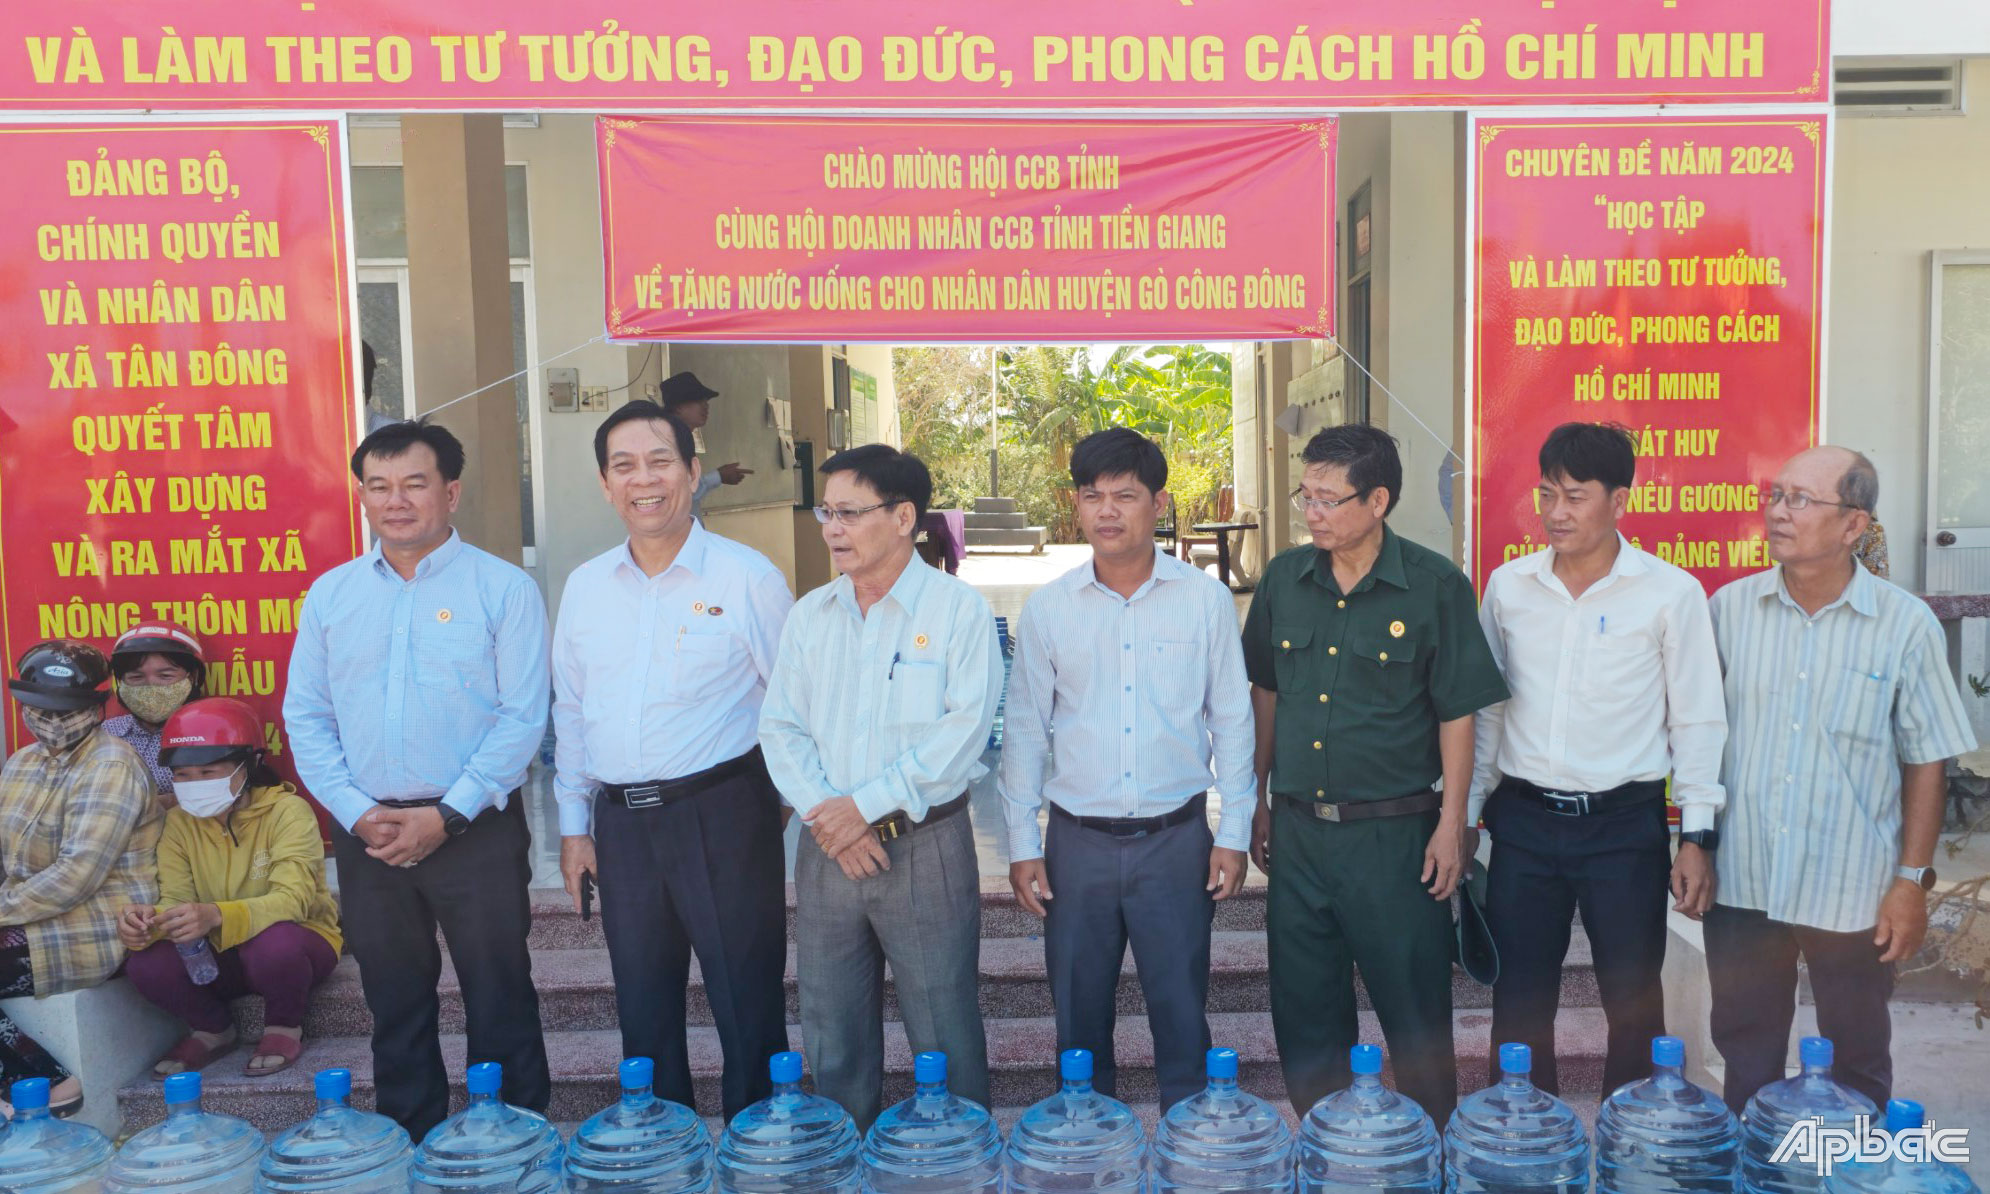 Hội Cựu chiến binh tỉnh Tiền Giang phối hợp với Hội Doanh nhân Cựu chiến binh tỉnh Tiền Giang tổ chức trao tặng bình nước uống cho người dân huyện Gò Công Đông.